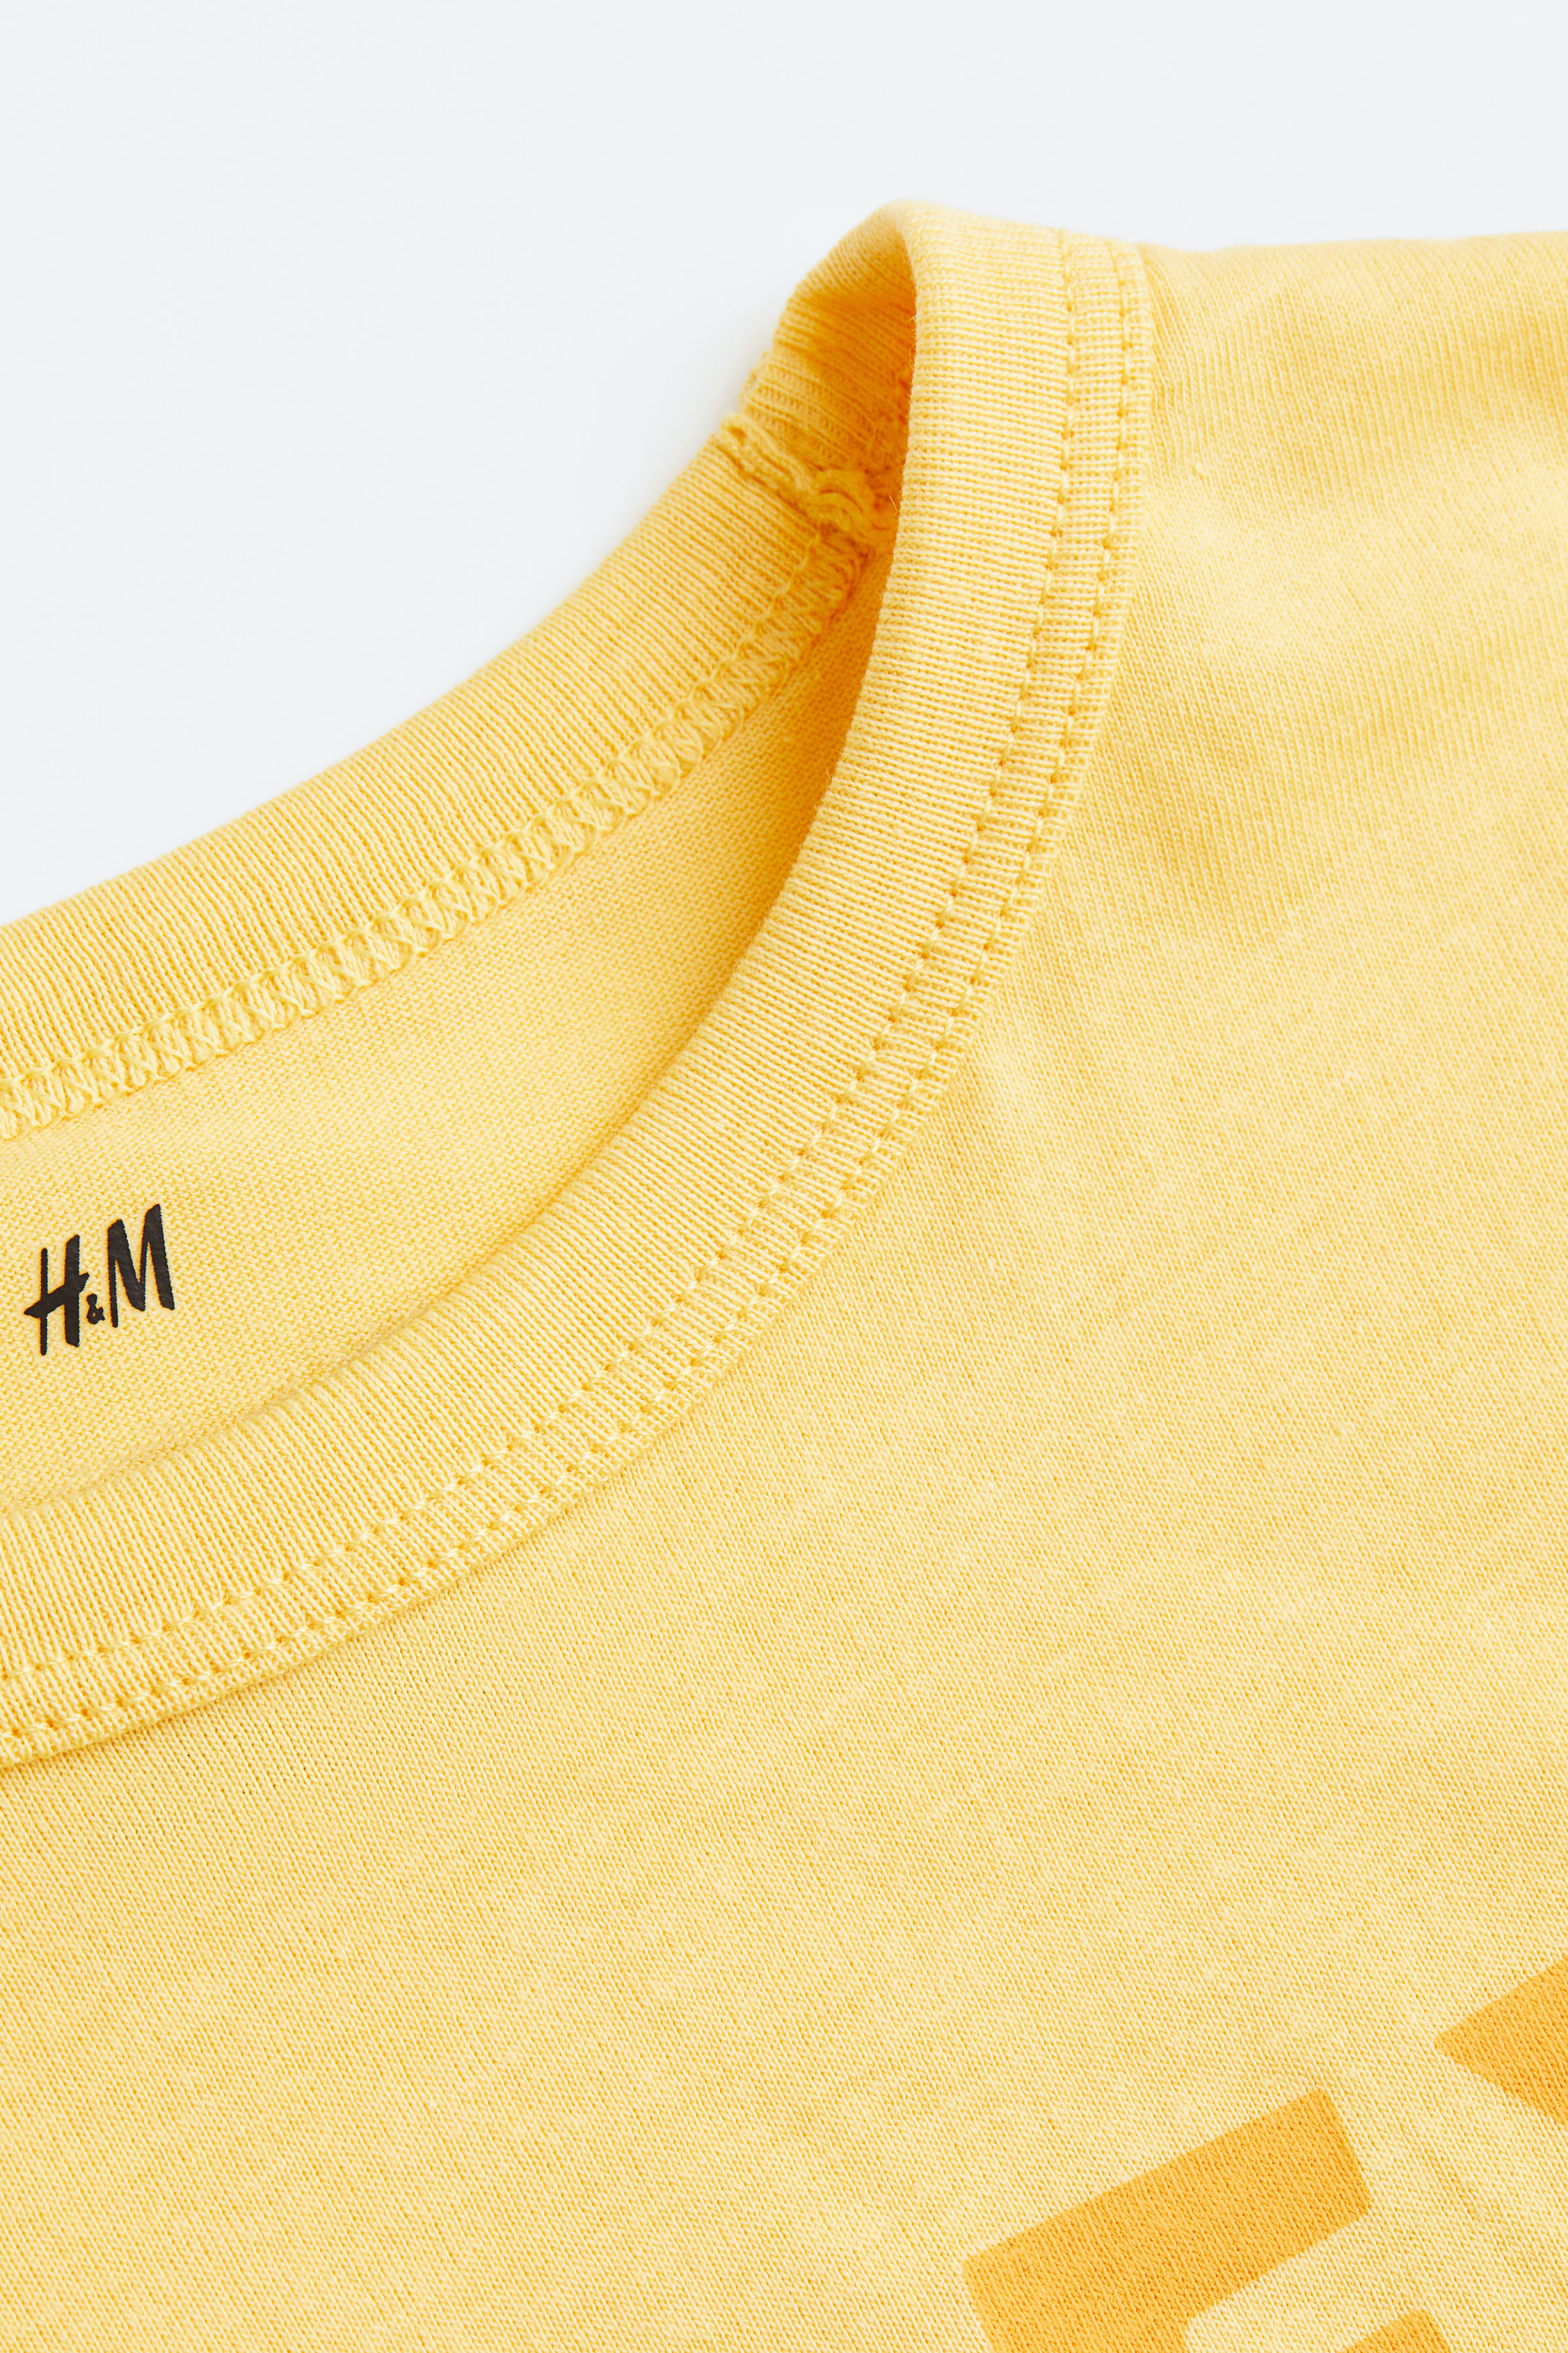 تی شرت پسرانه 22495 سایز 1.5 تا 10 سال کد 1 مارک H&M